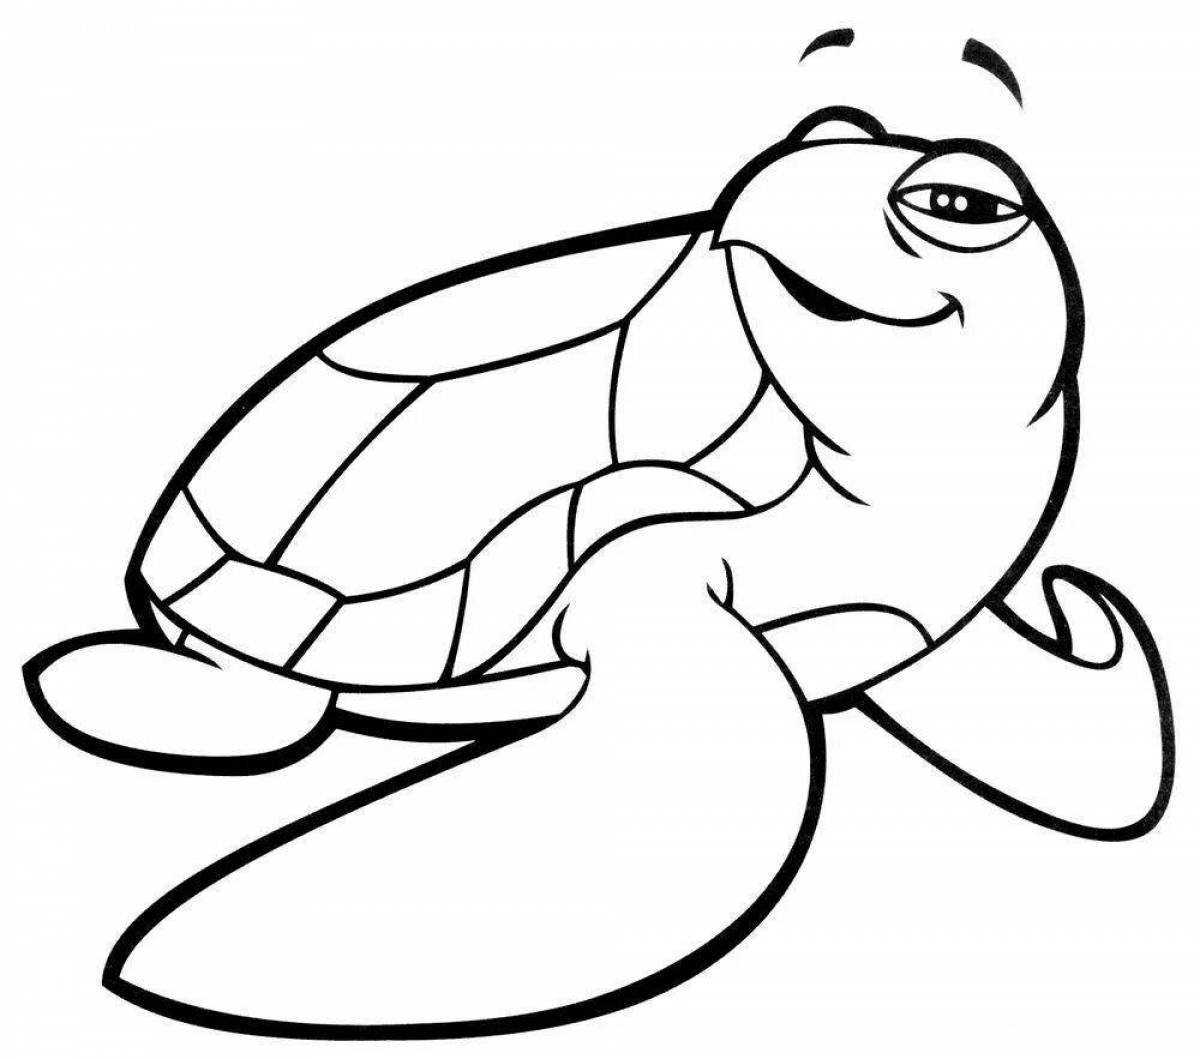 Coloring page happy sea turtle